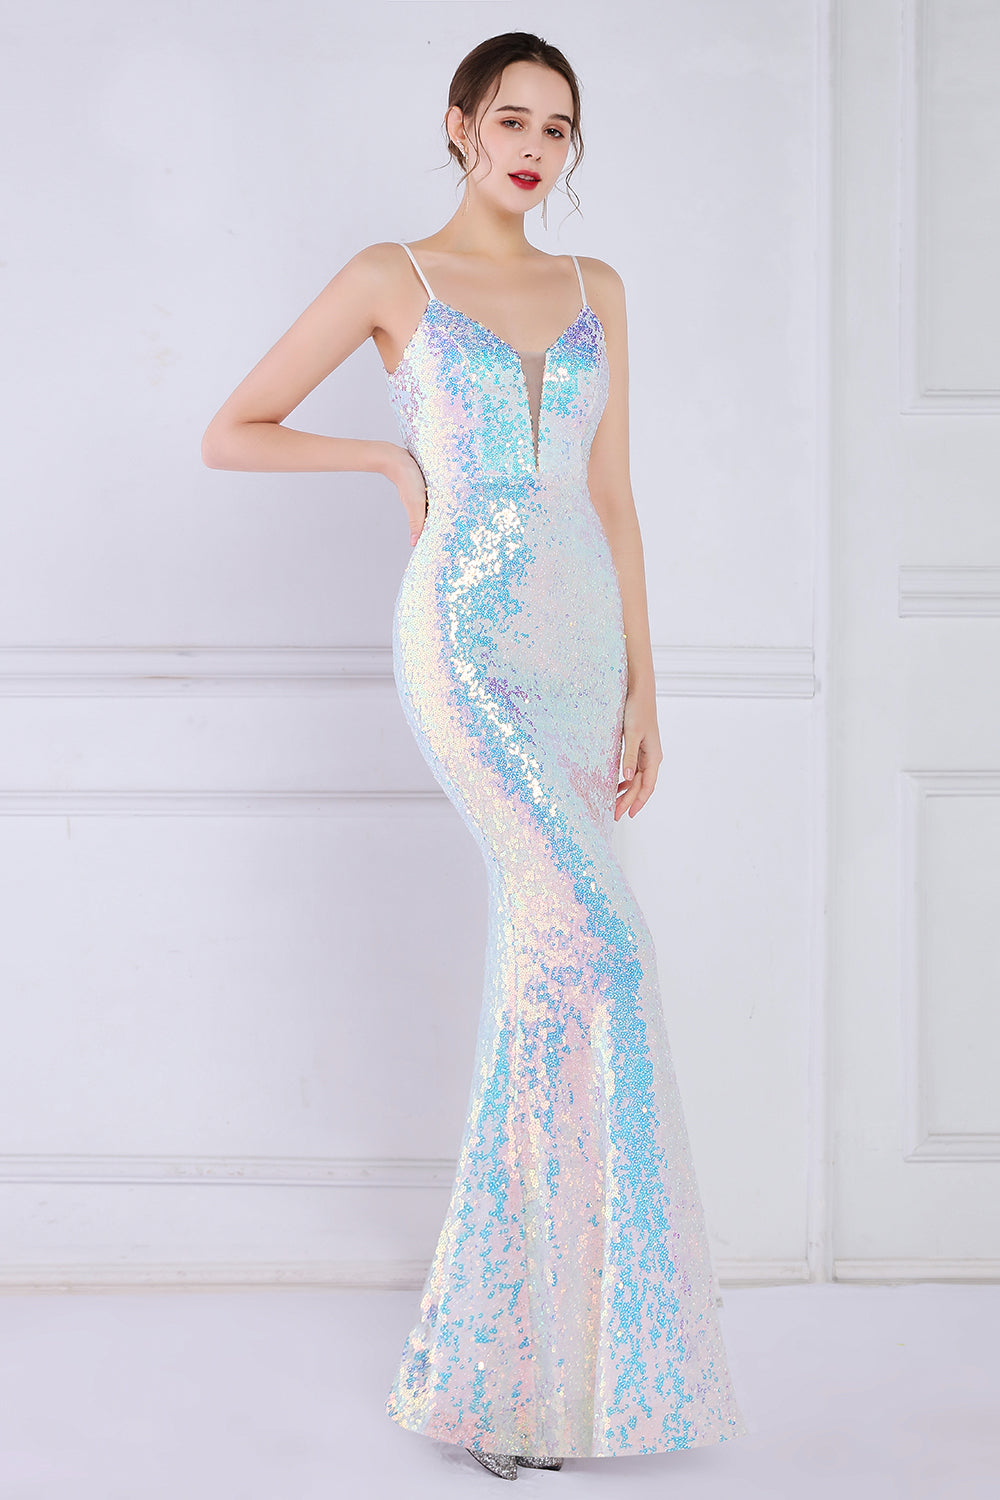 Dazzling Rainbow White Seuiqned Mermaid Ball Dress